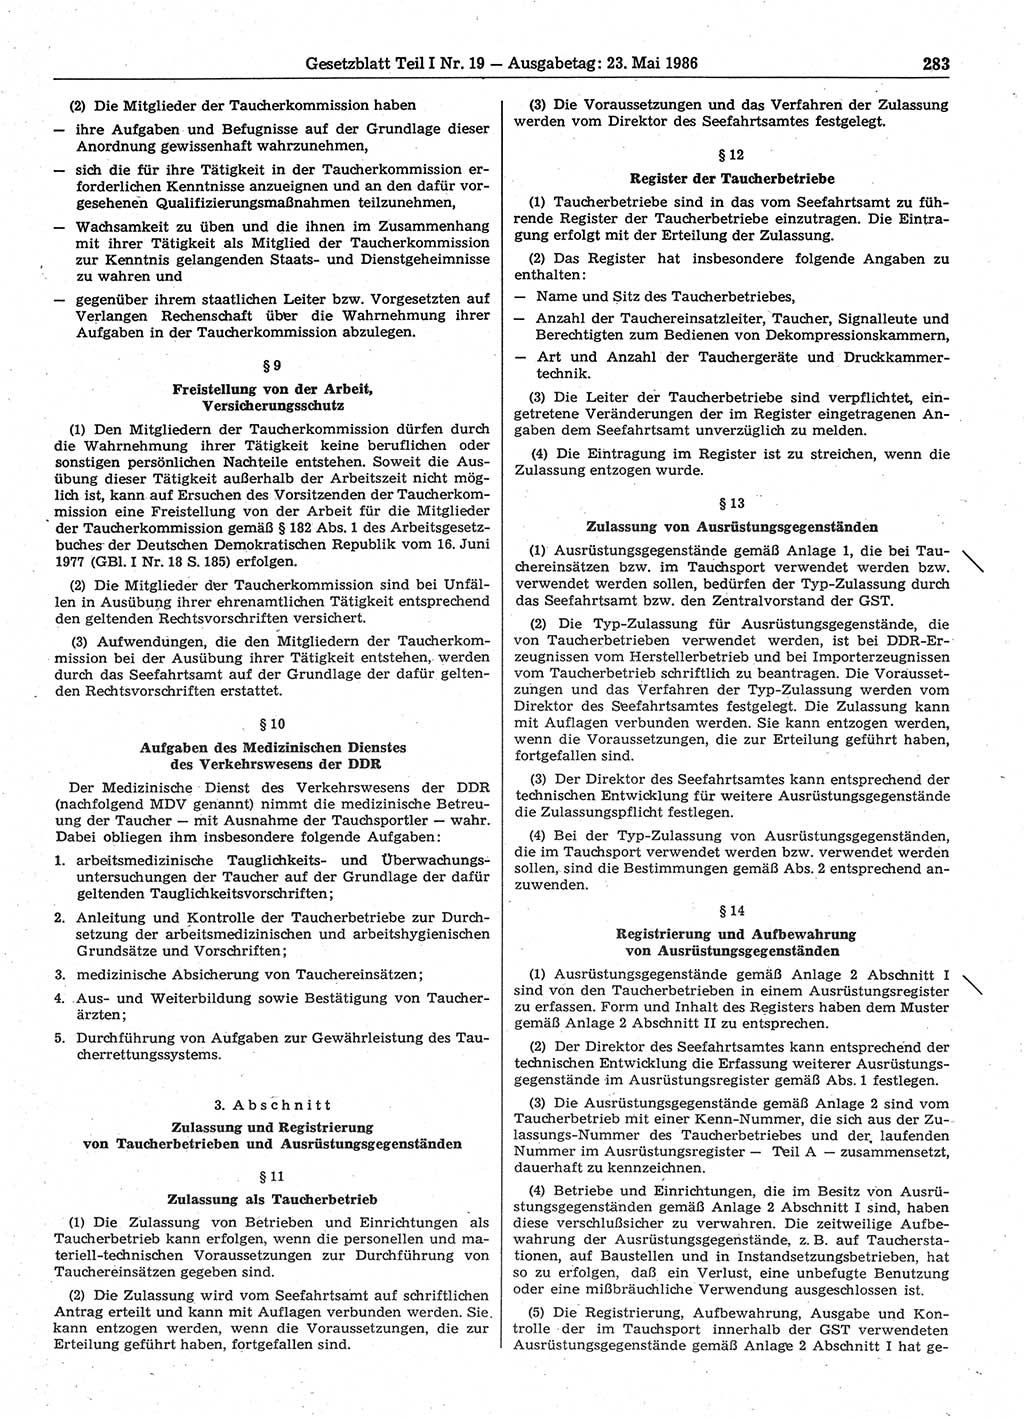 Gesetzblatt (GBl.) der Deutschen Demokratischen Republik (DDR) Teil Ⅰ 1986, Seite 283 (GBl. DDR Ⅰ 1986, S. 283)